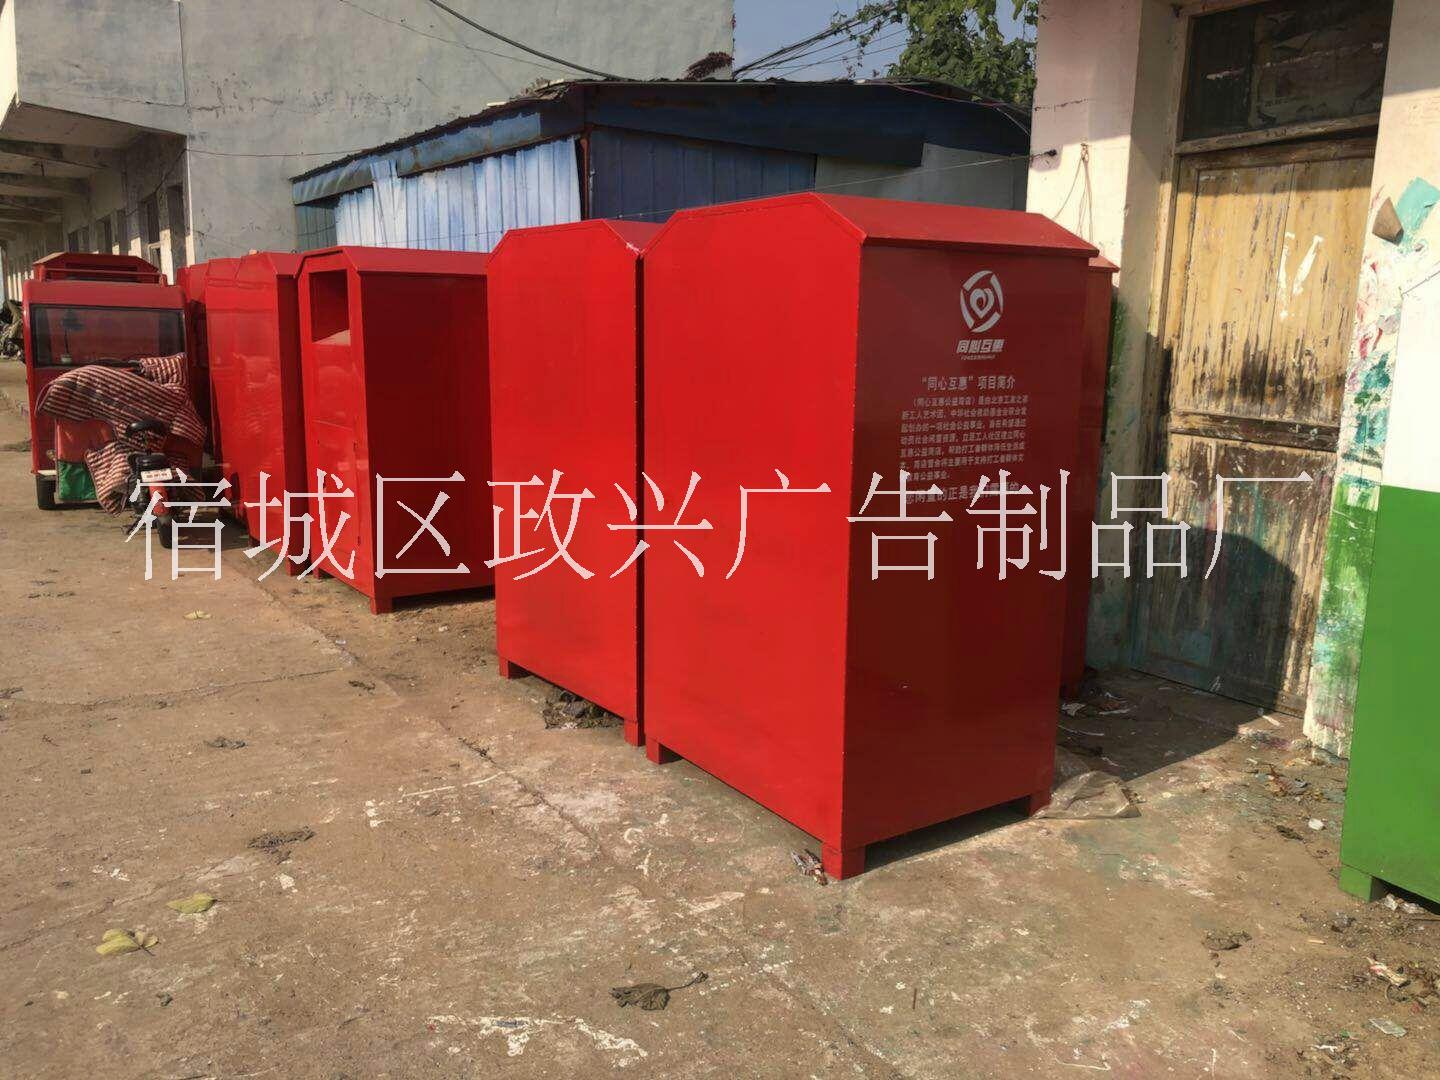 回收箱 环保回收箱 衣物环保回收箱 江苏宿迁生产厂家图片